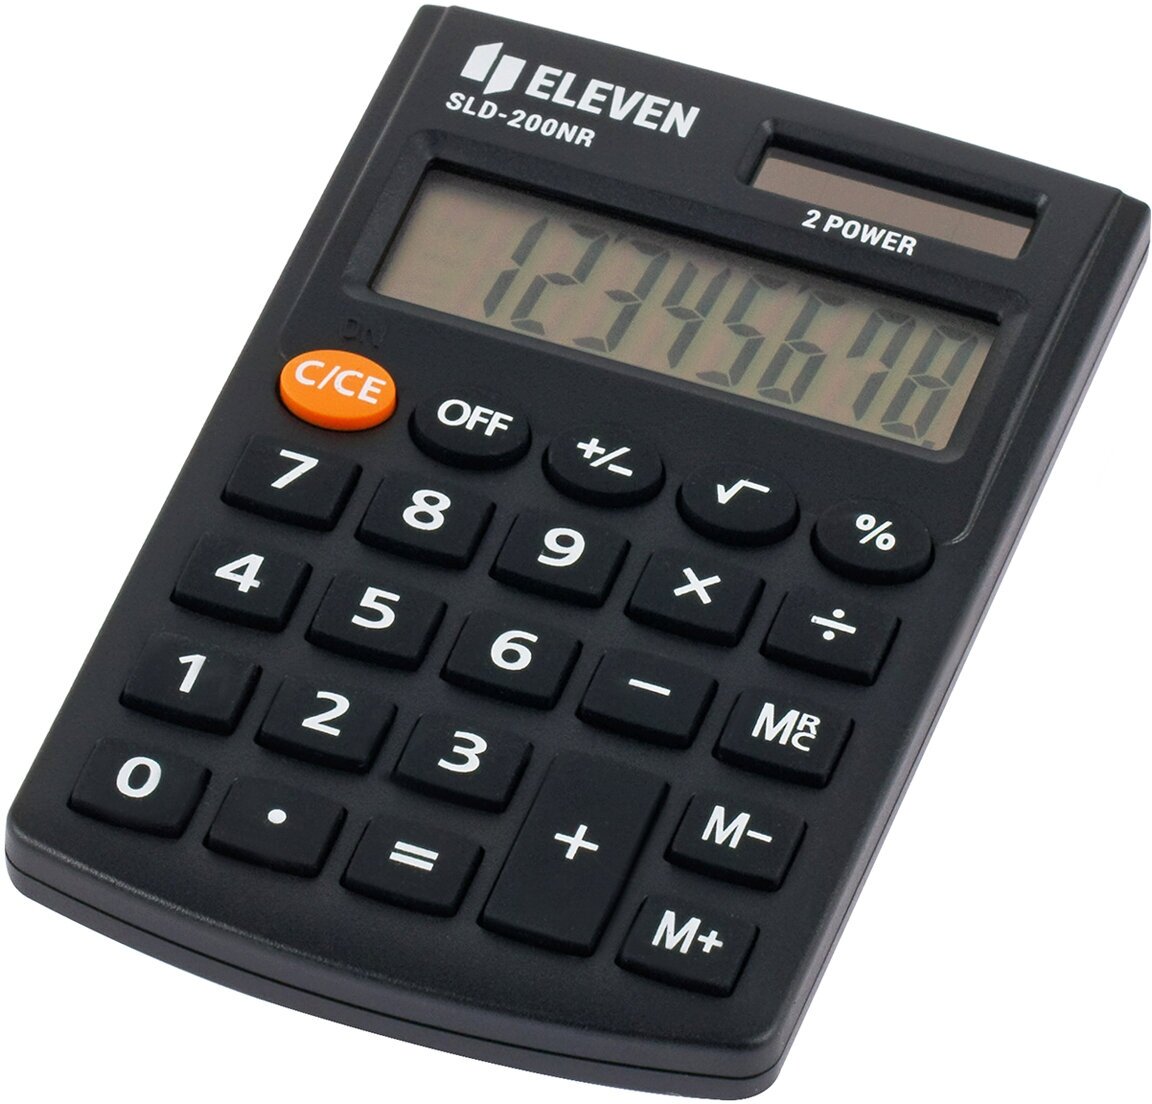 Калькулятор карманный Eleven SLD-200NR, 8 разрядов, двойное питание, 62*98*10мм, черный - 2 шт.